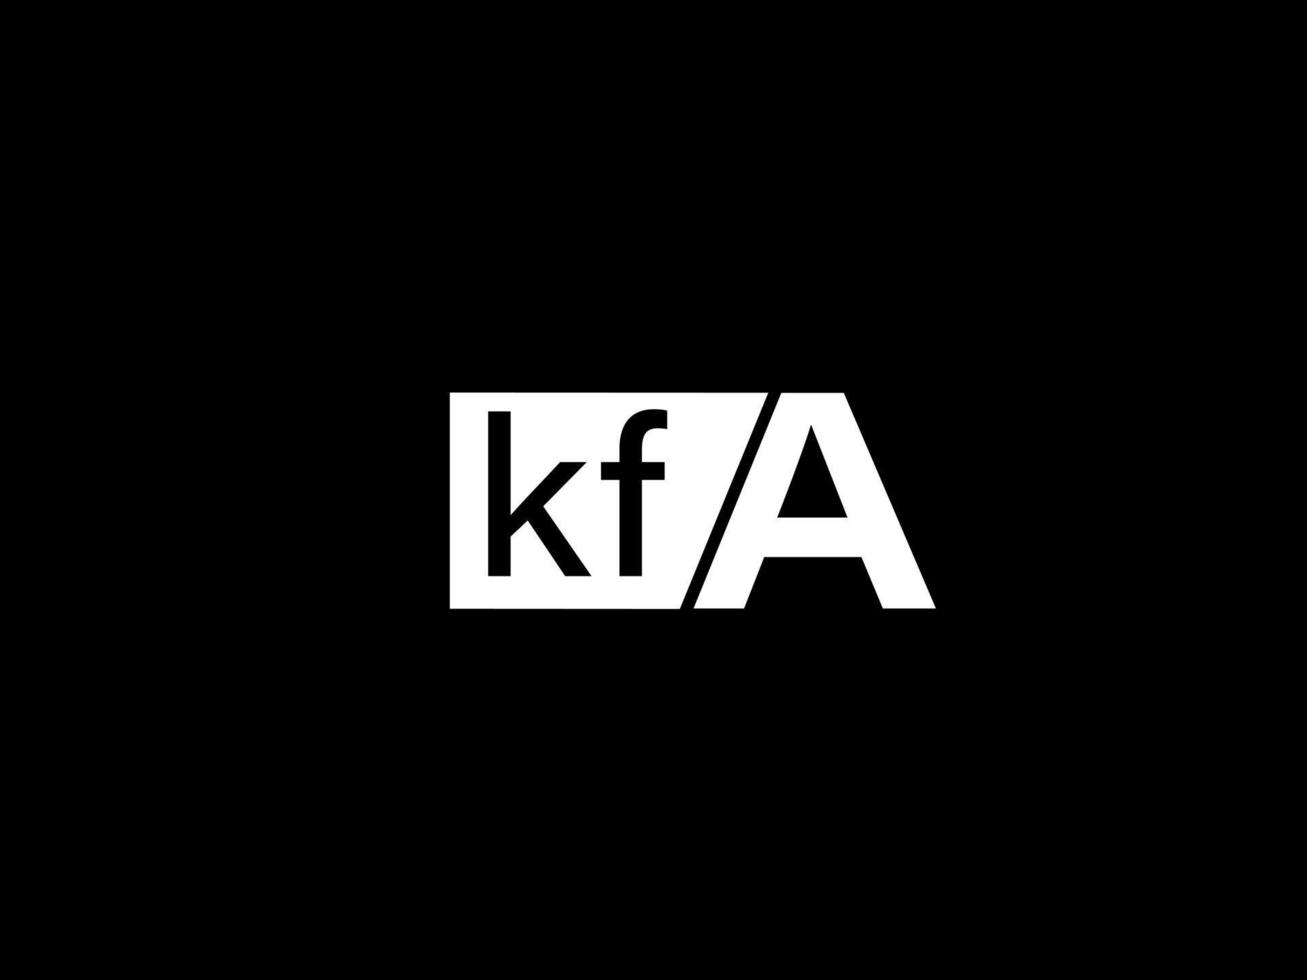 kfa logo e grafica design vettore arte, icone isolato su nero sfondo